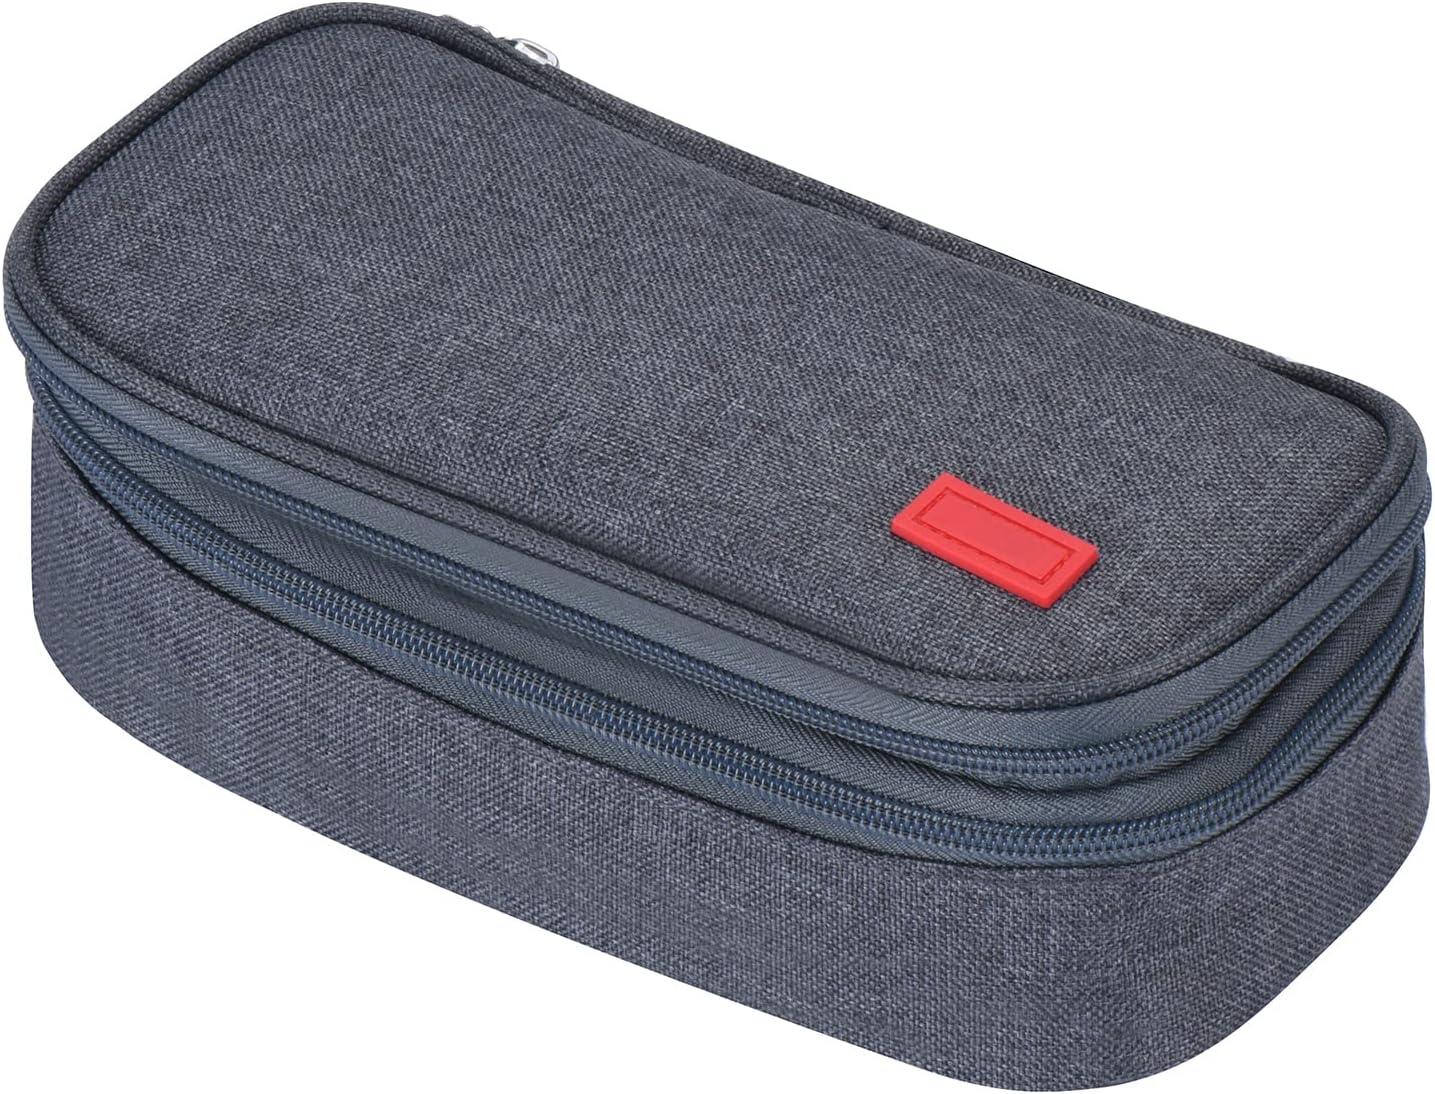 Pencil Case Large Capacity w/ 3 Compartments Zipper Pouch Organizer Pen Bag